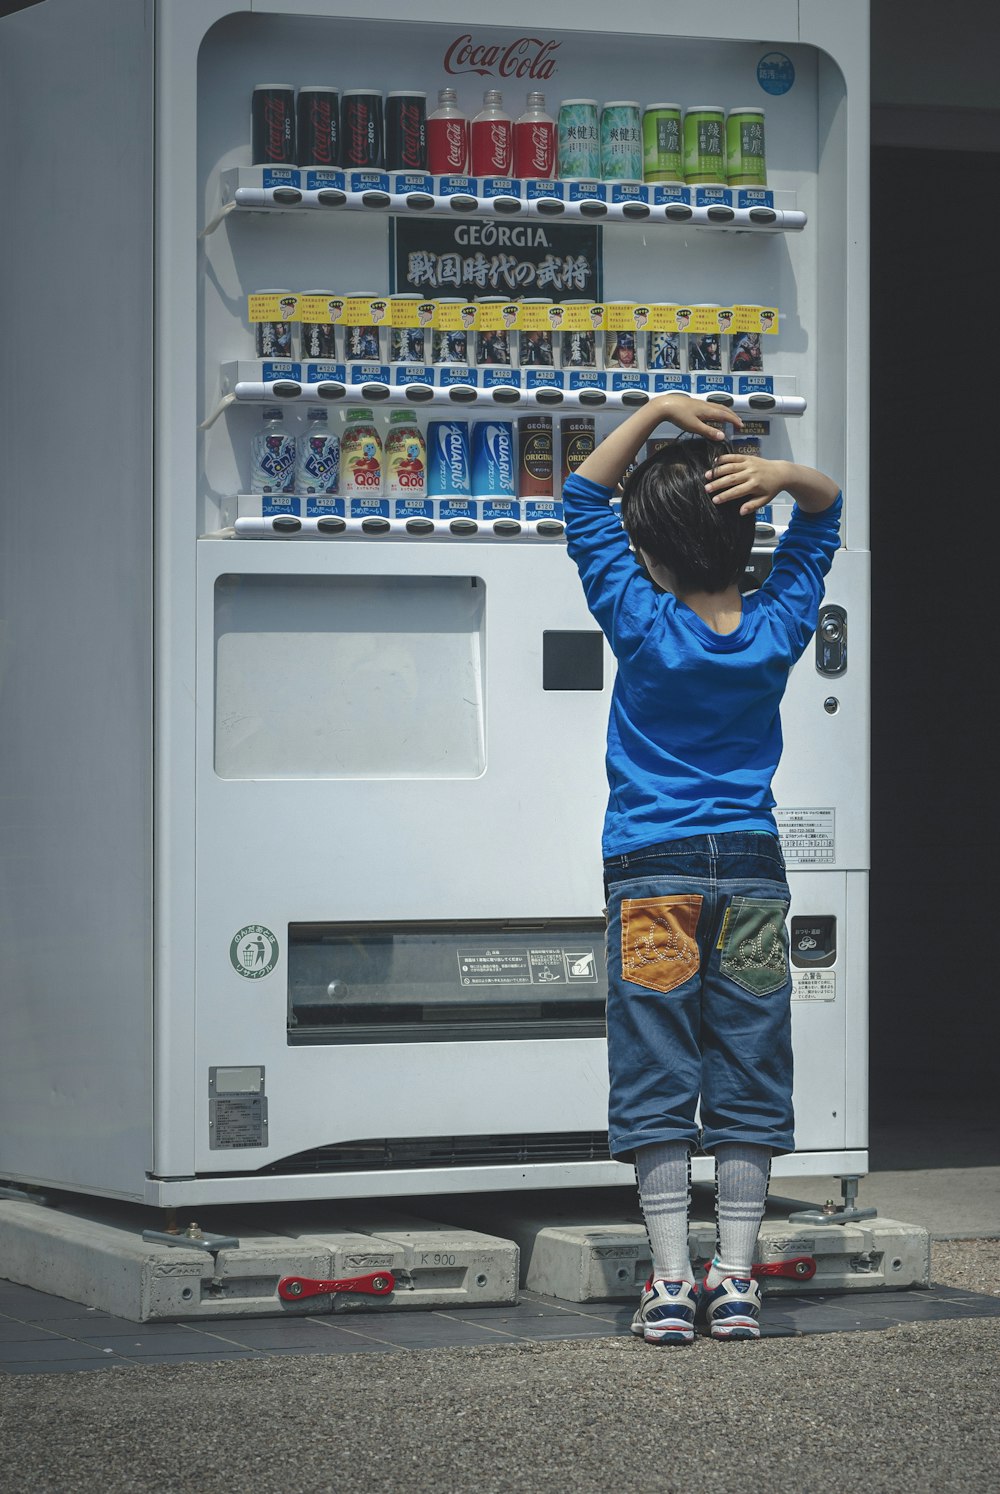 Ein kleiner Junge steht vor einem Automaten